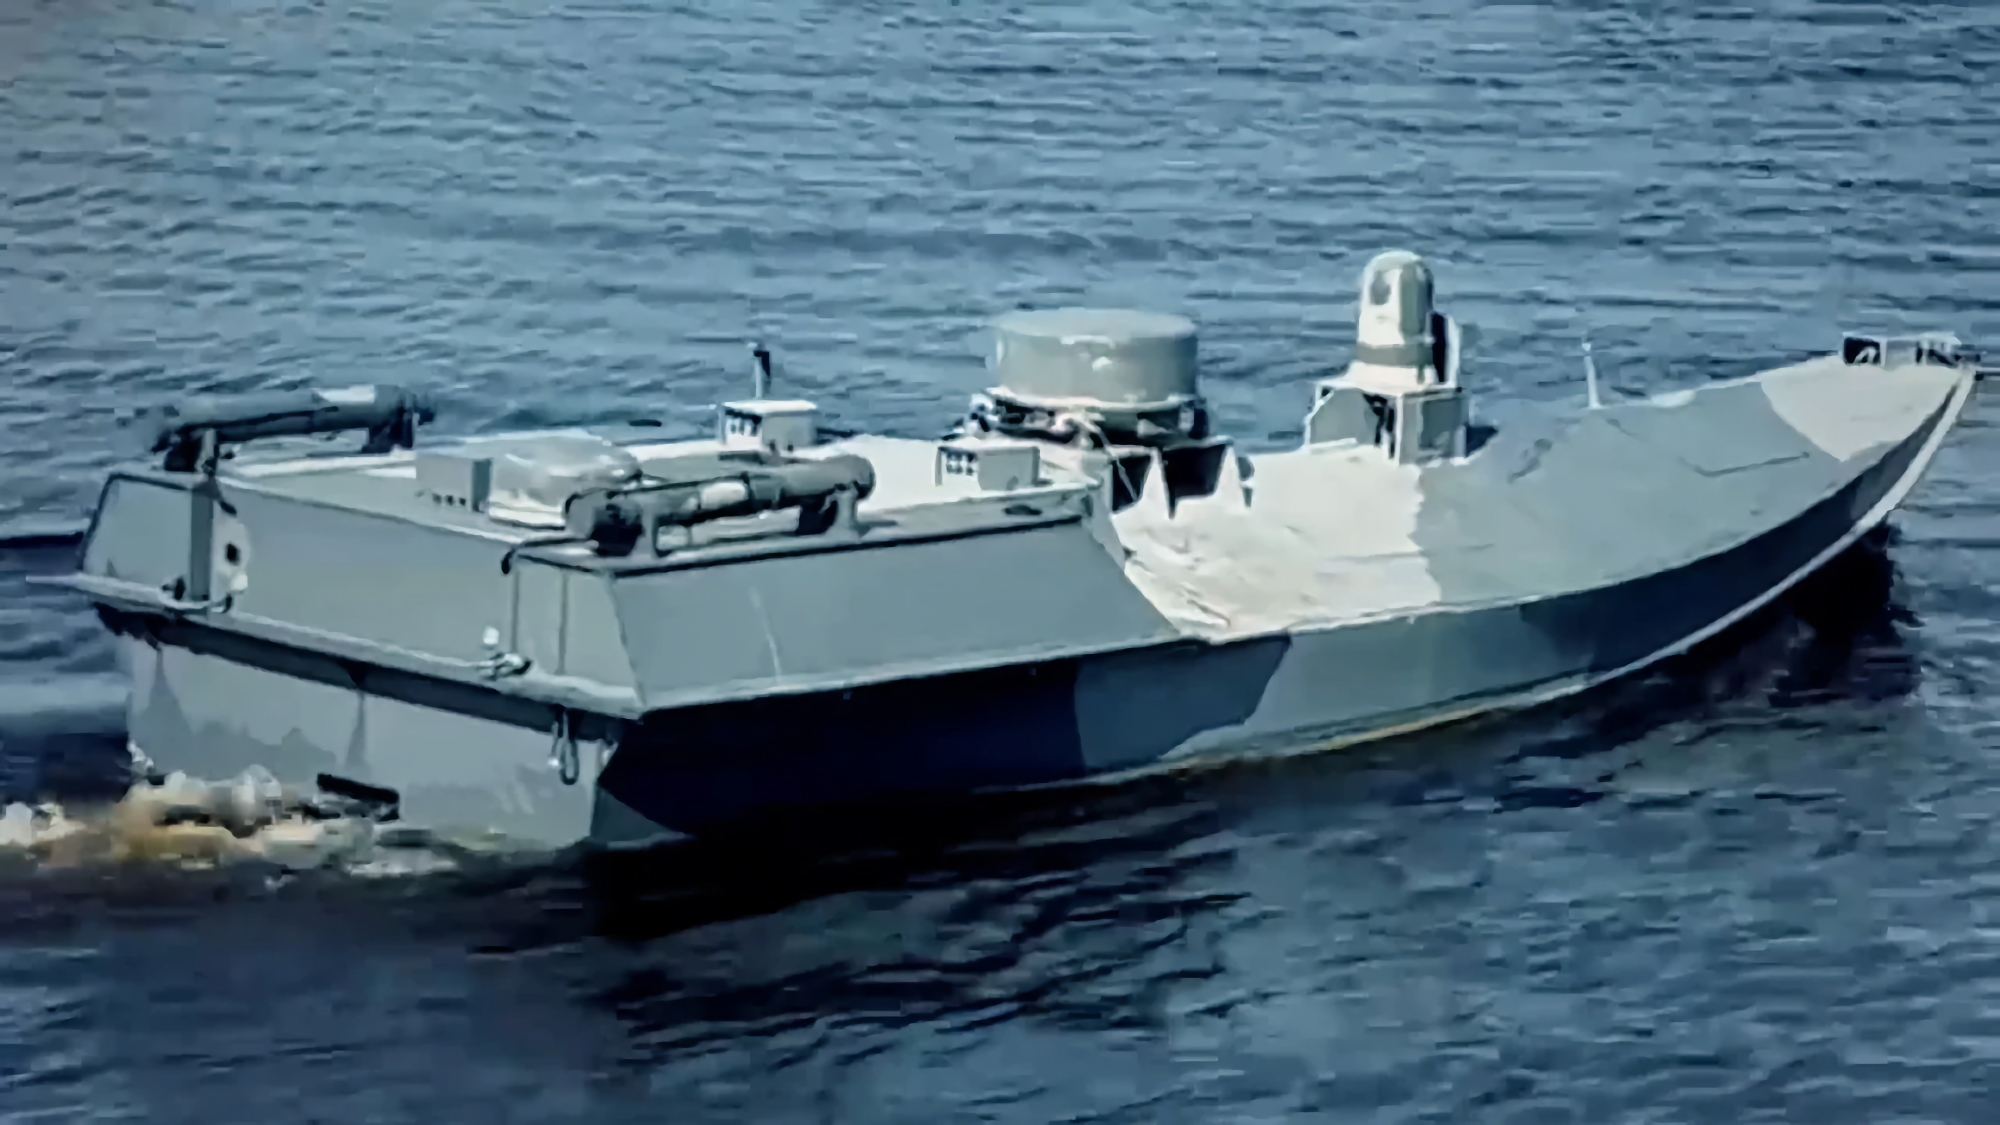 Ukraina opracowała nowego drona morskiego Sea Baby z 850 kg ładunków wybuchowych, SBU użyła go do ataku na most na Krymie w lipcu.